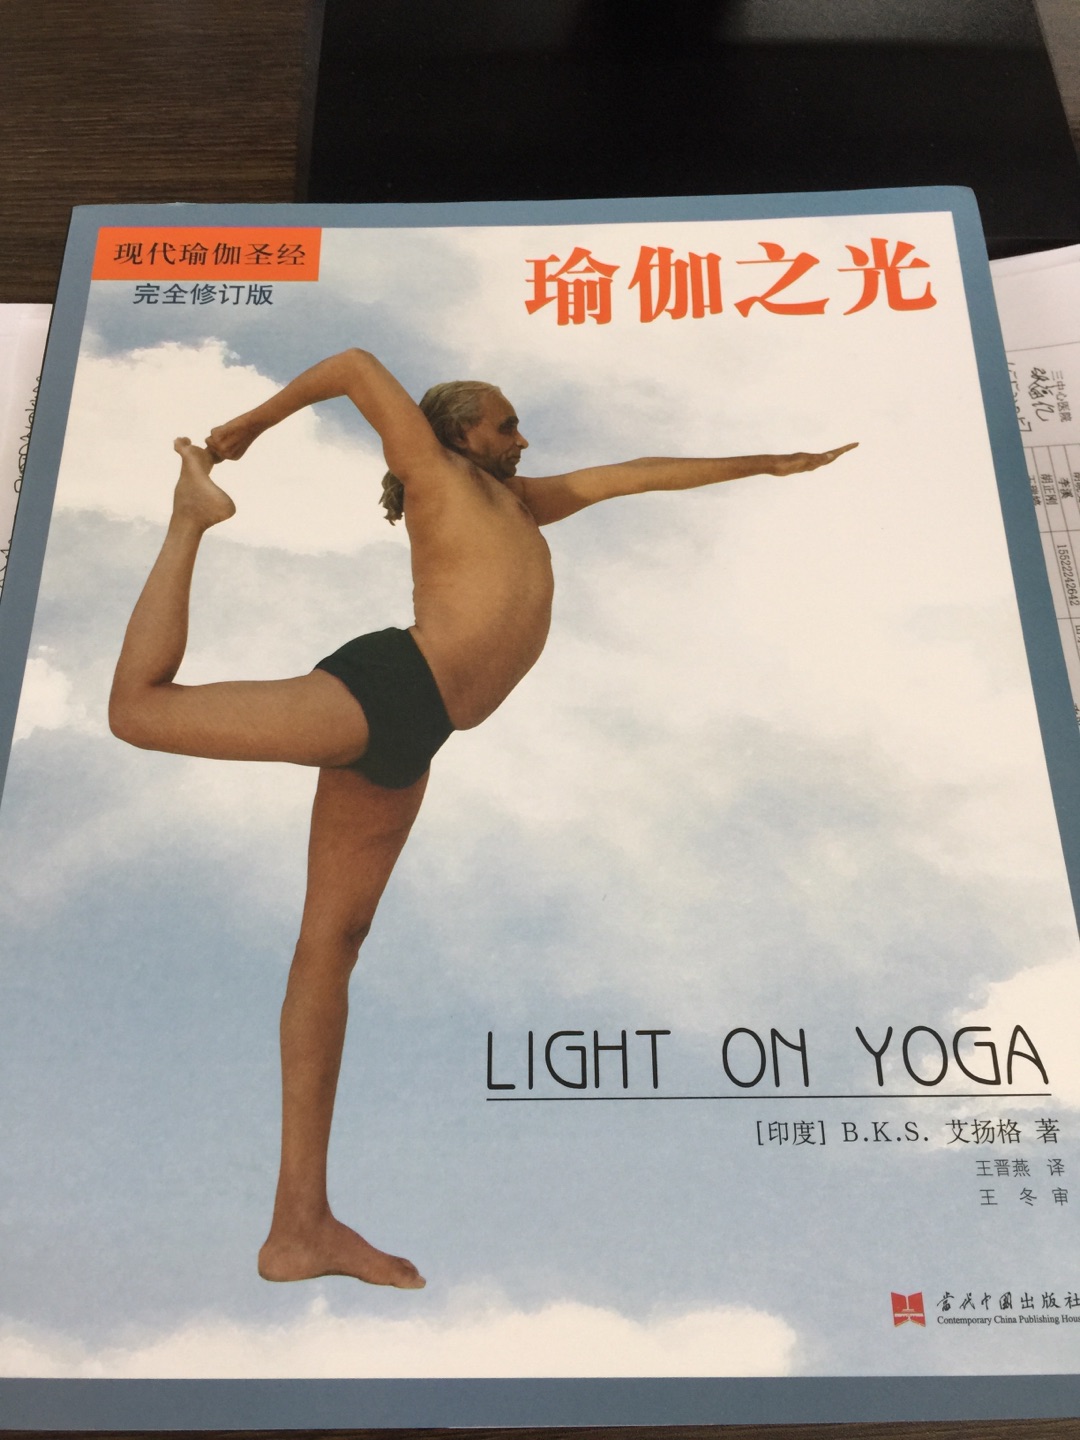 艾扬格瑜伽个人觉得是一个很好的流派。特意买的此书。书中有体式的做法和功效。知其然还知其所以然。好事。纸张。印刷都很好